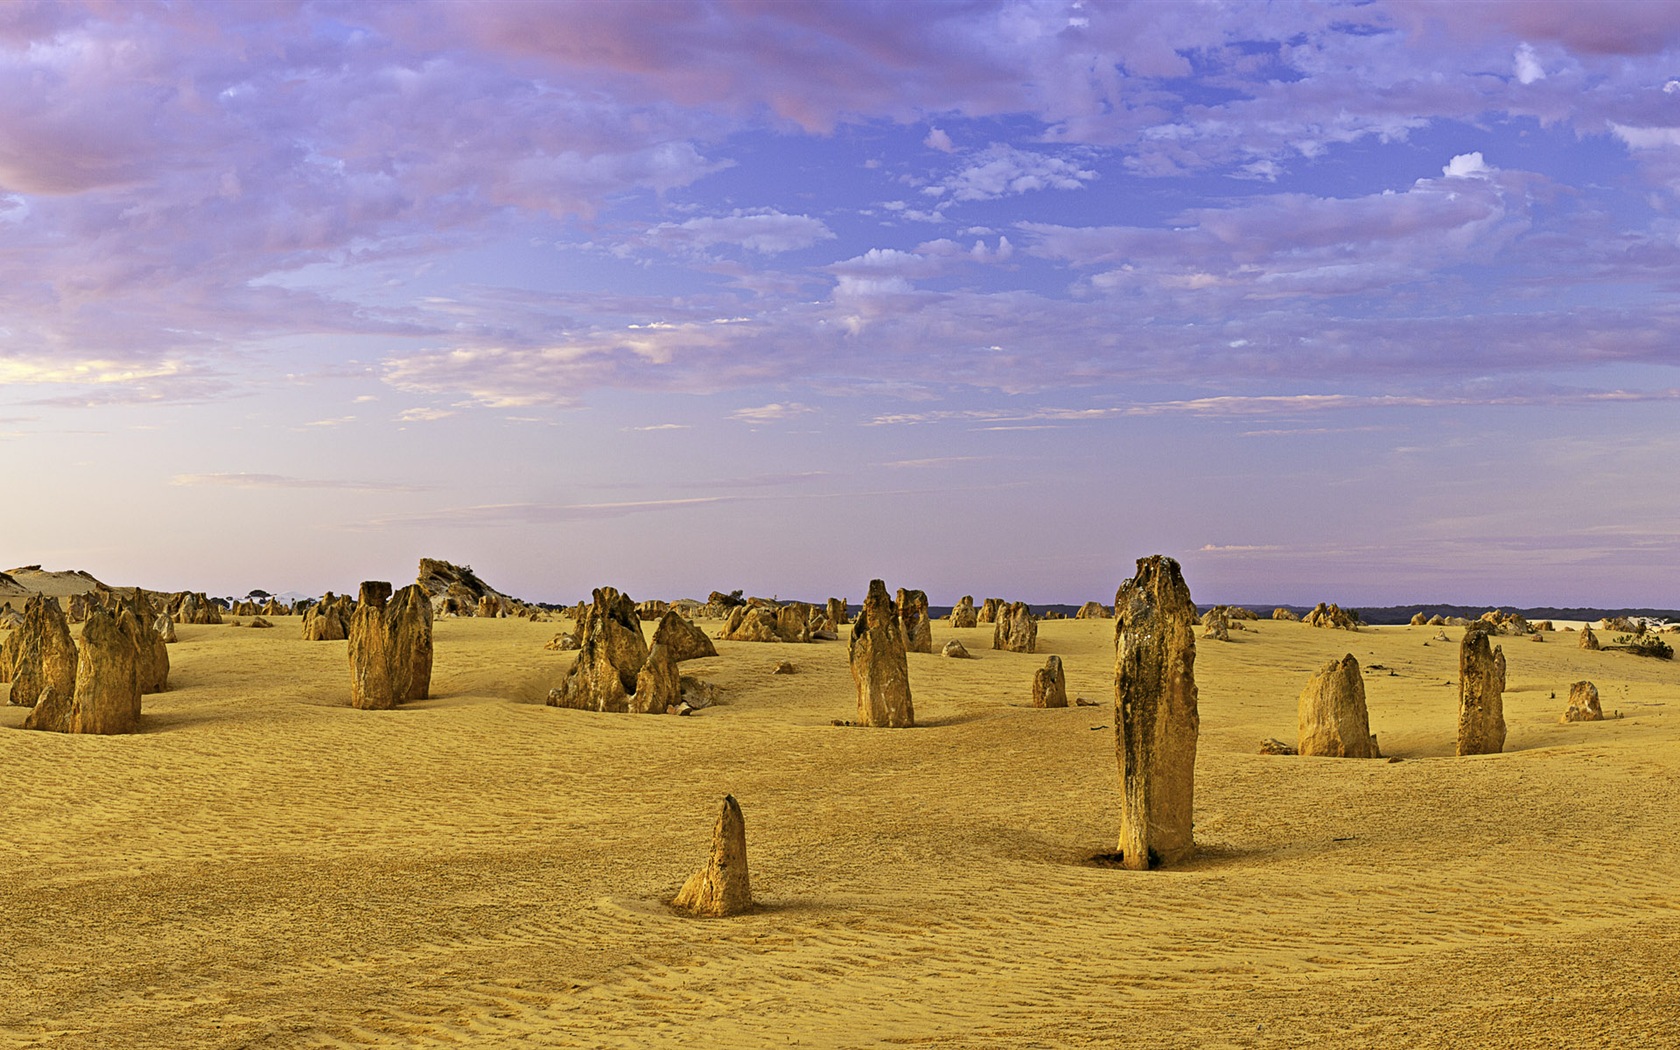 Les déserts chauds et arides, de Windows 8 fonds d'écran widescreen panoramique #8 - 1680x1050